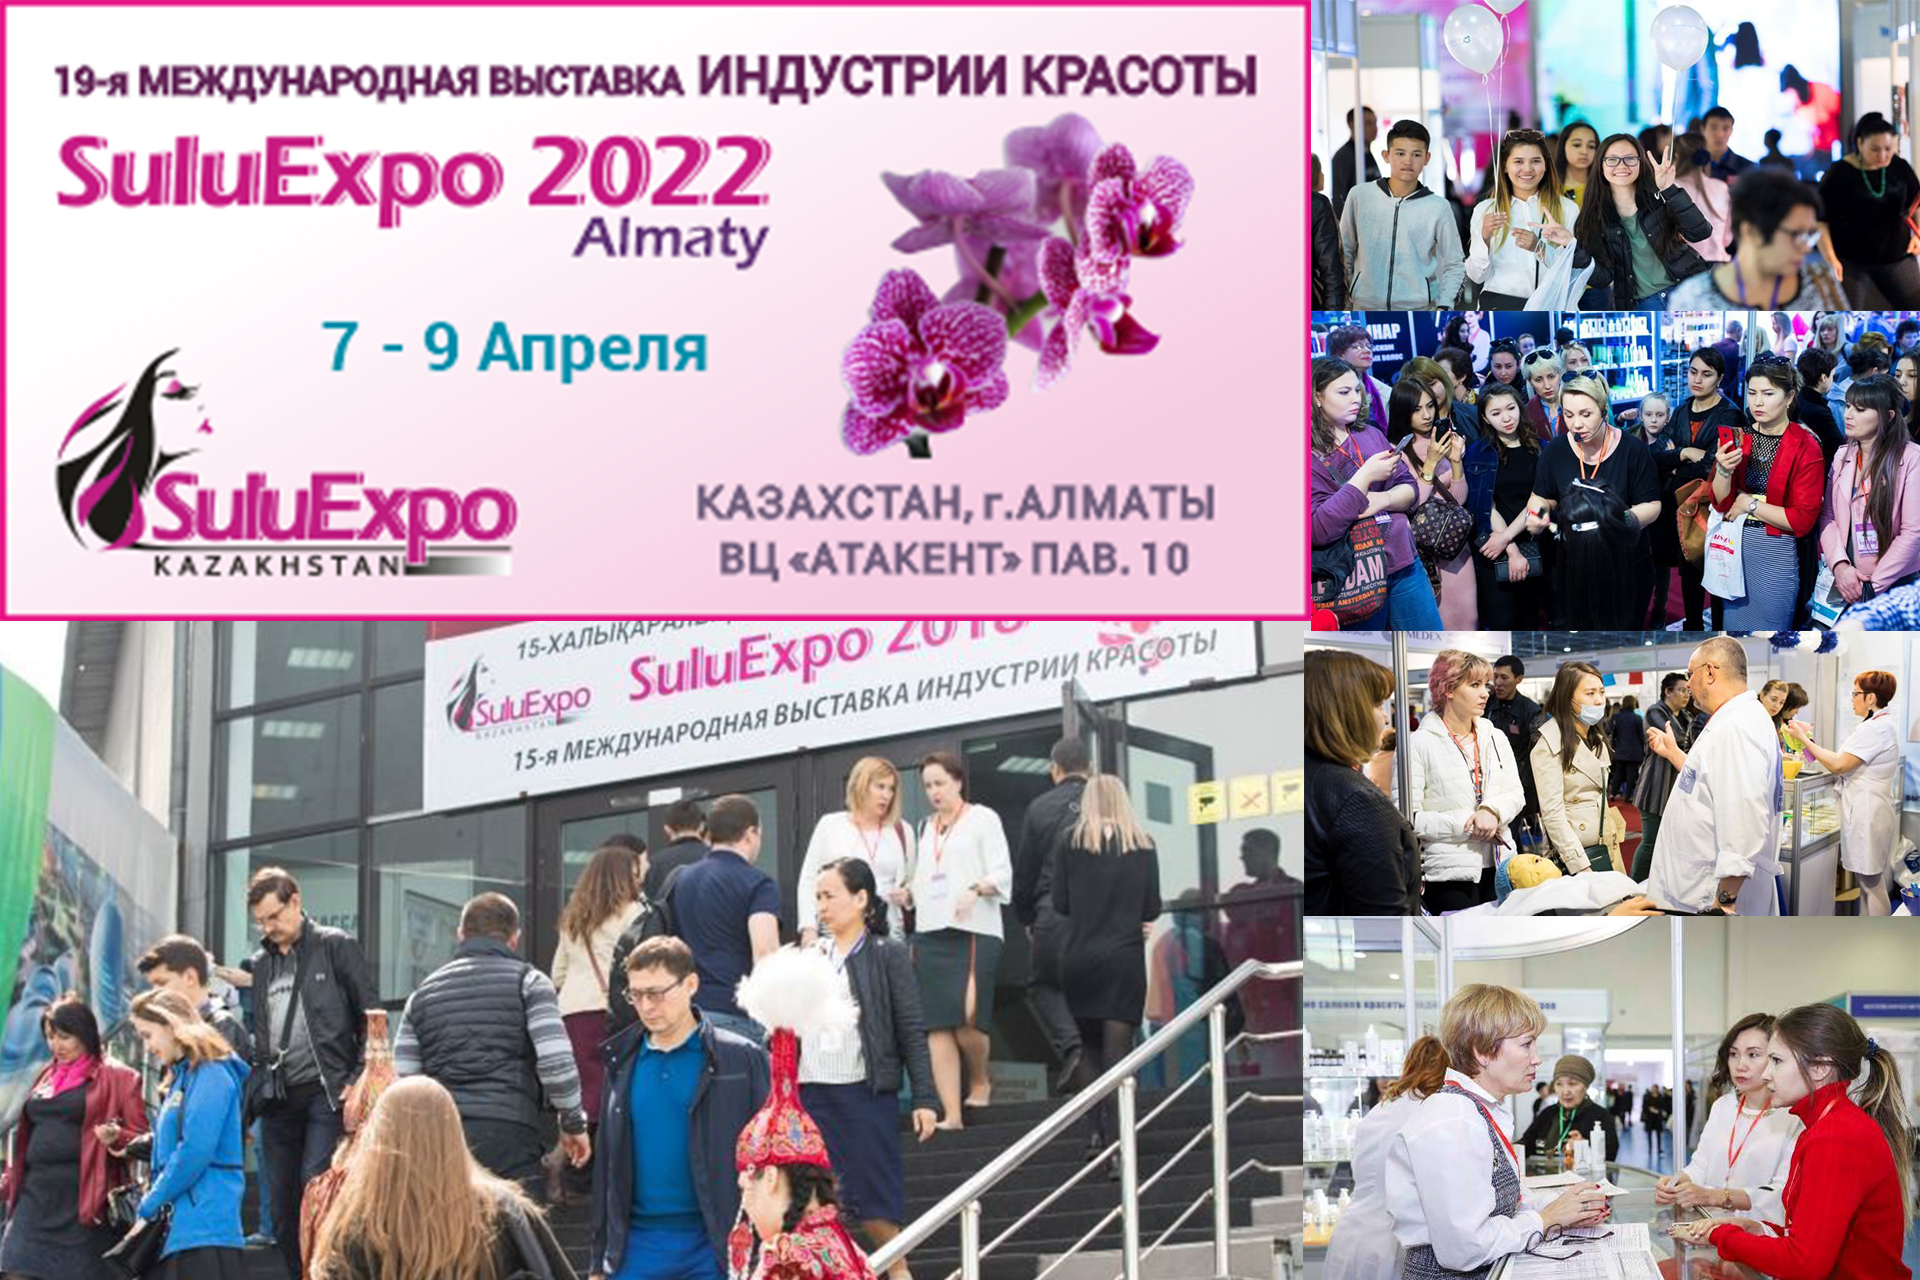 Специализированная выставка индустрии красоты в Казахстане SuluExpo Almaty-2022